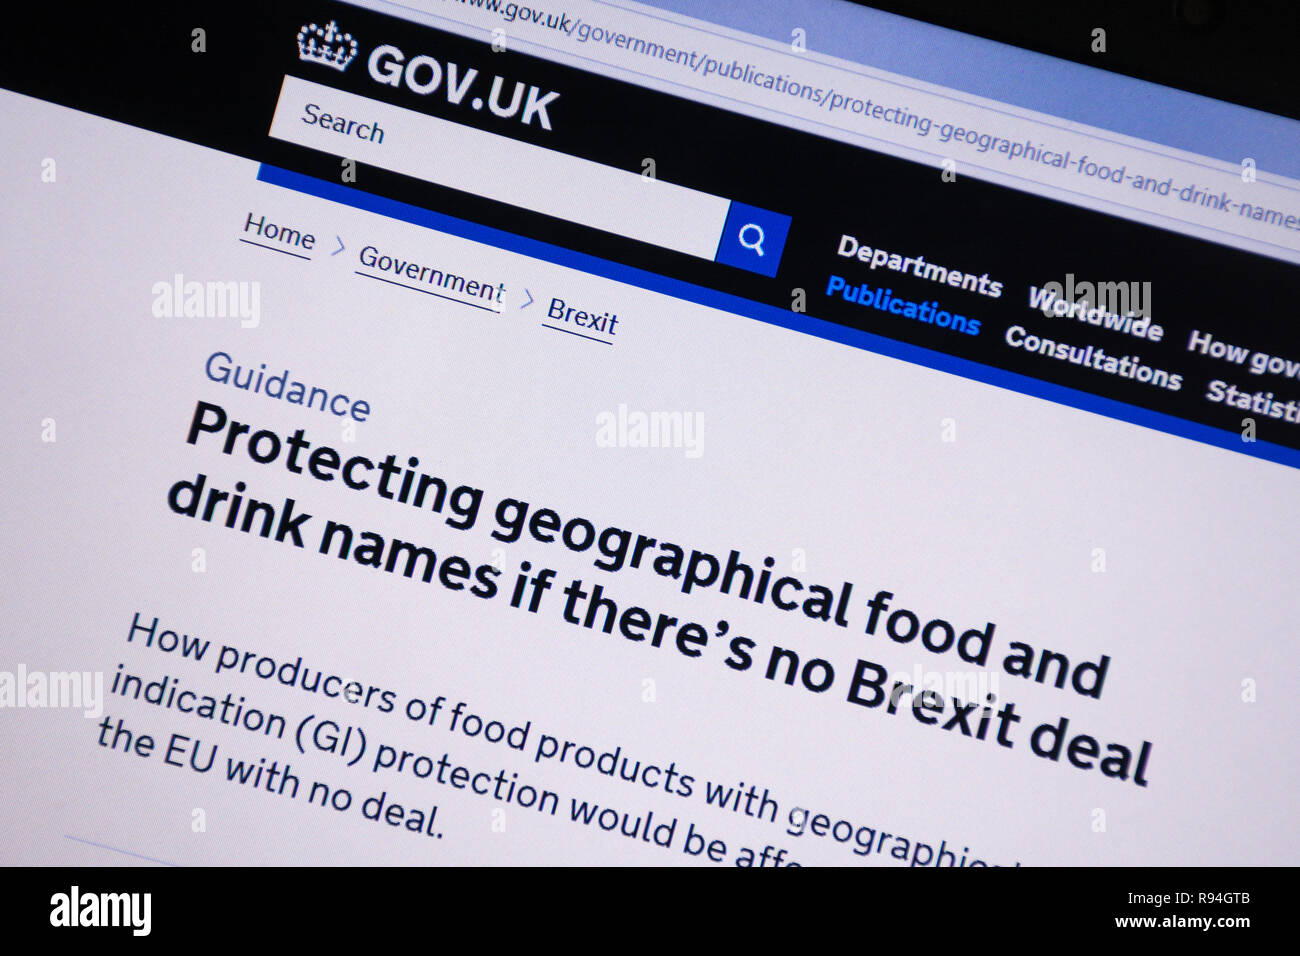 Capture d'écran de l'ordinateur de la gov.uk site montrant des conseils sur la protection des noms d'aliments et de boissons s'il n'y a pas beaucoup Brexit Banque D'Images